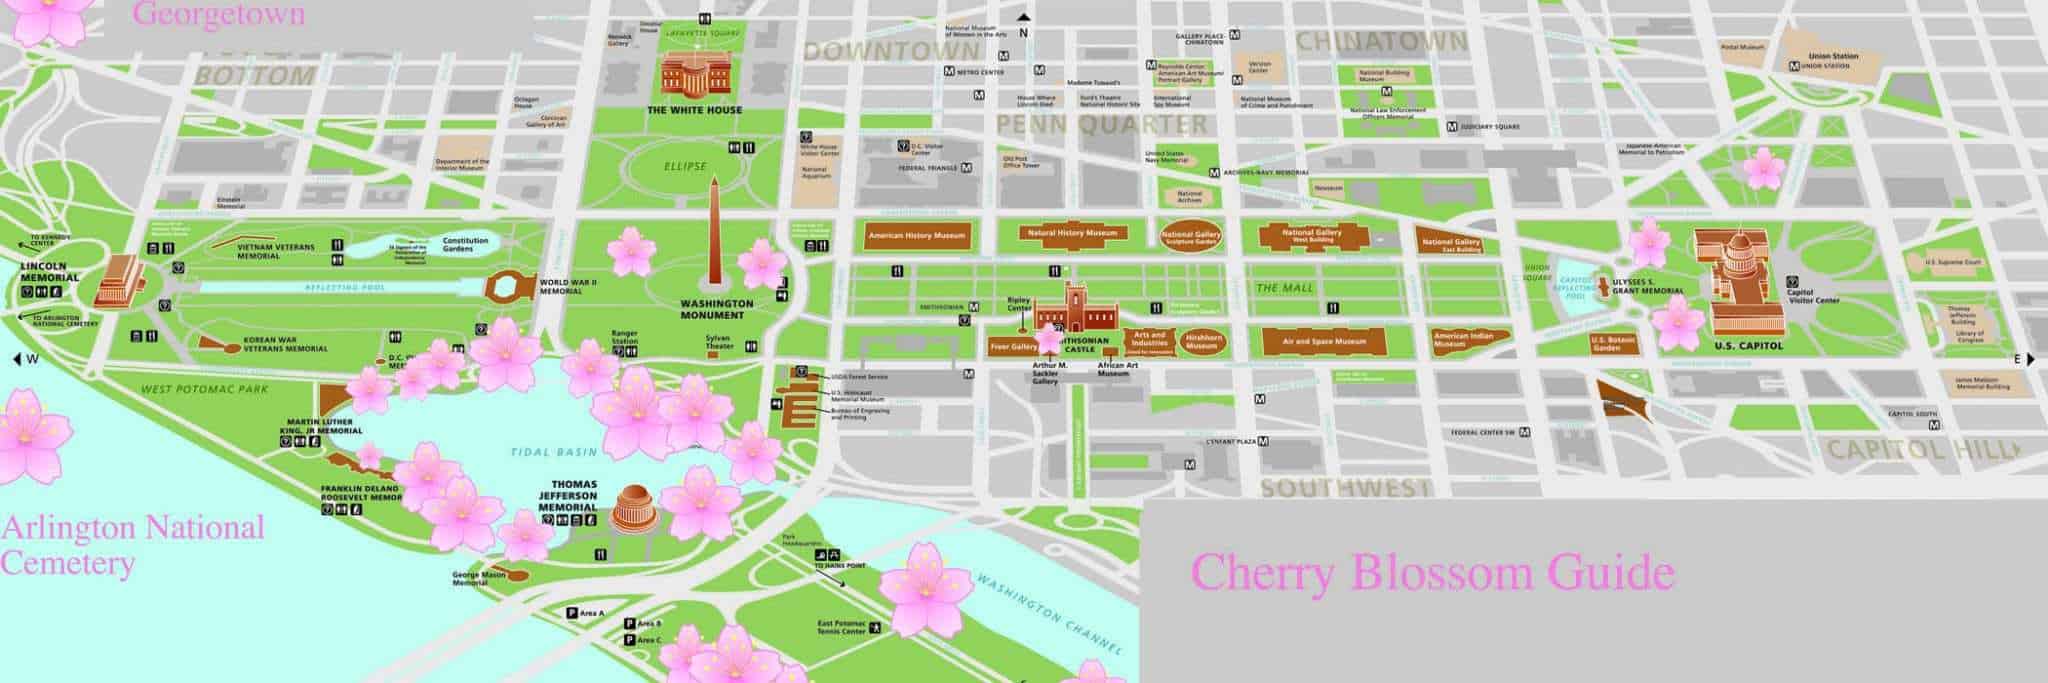 Cherry Blossom Guide